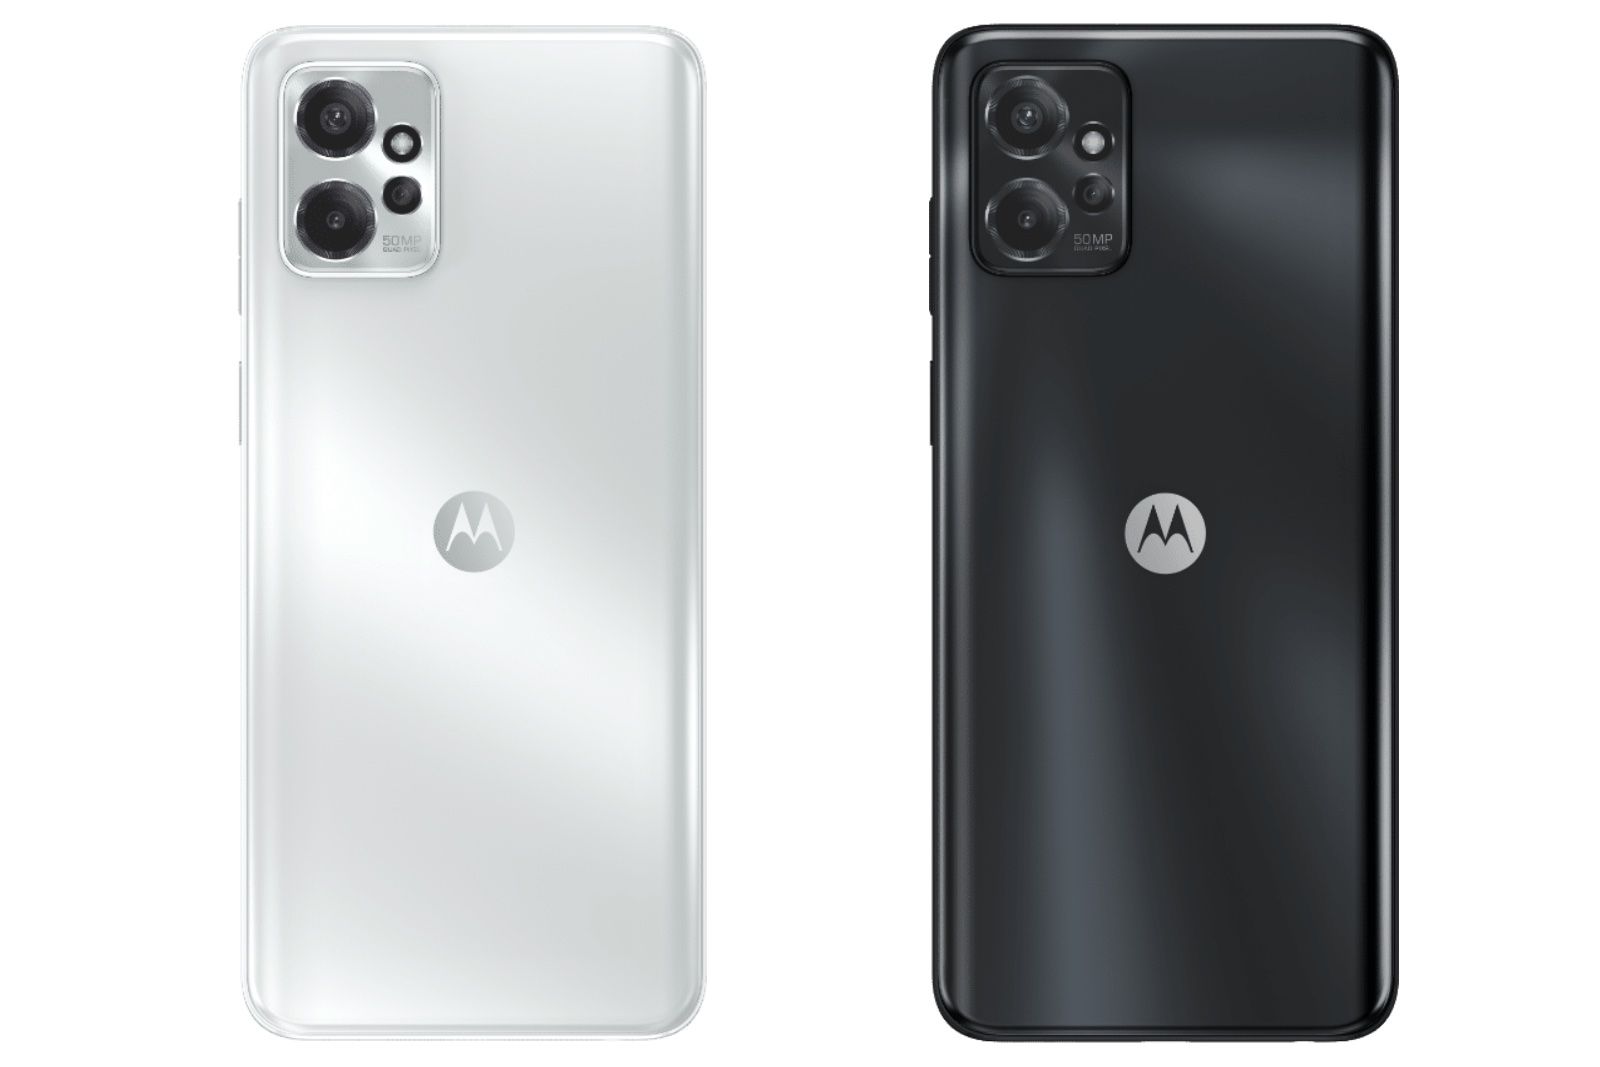 Motorola Moto G Power renders in silver and black